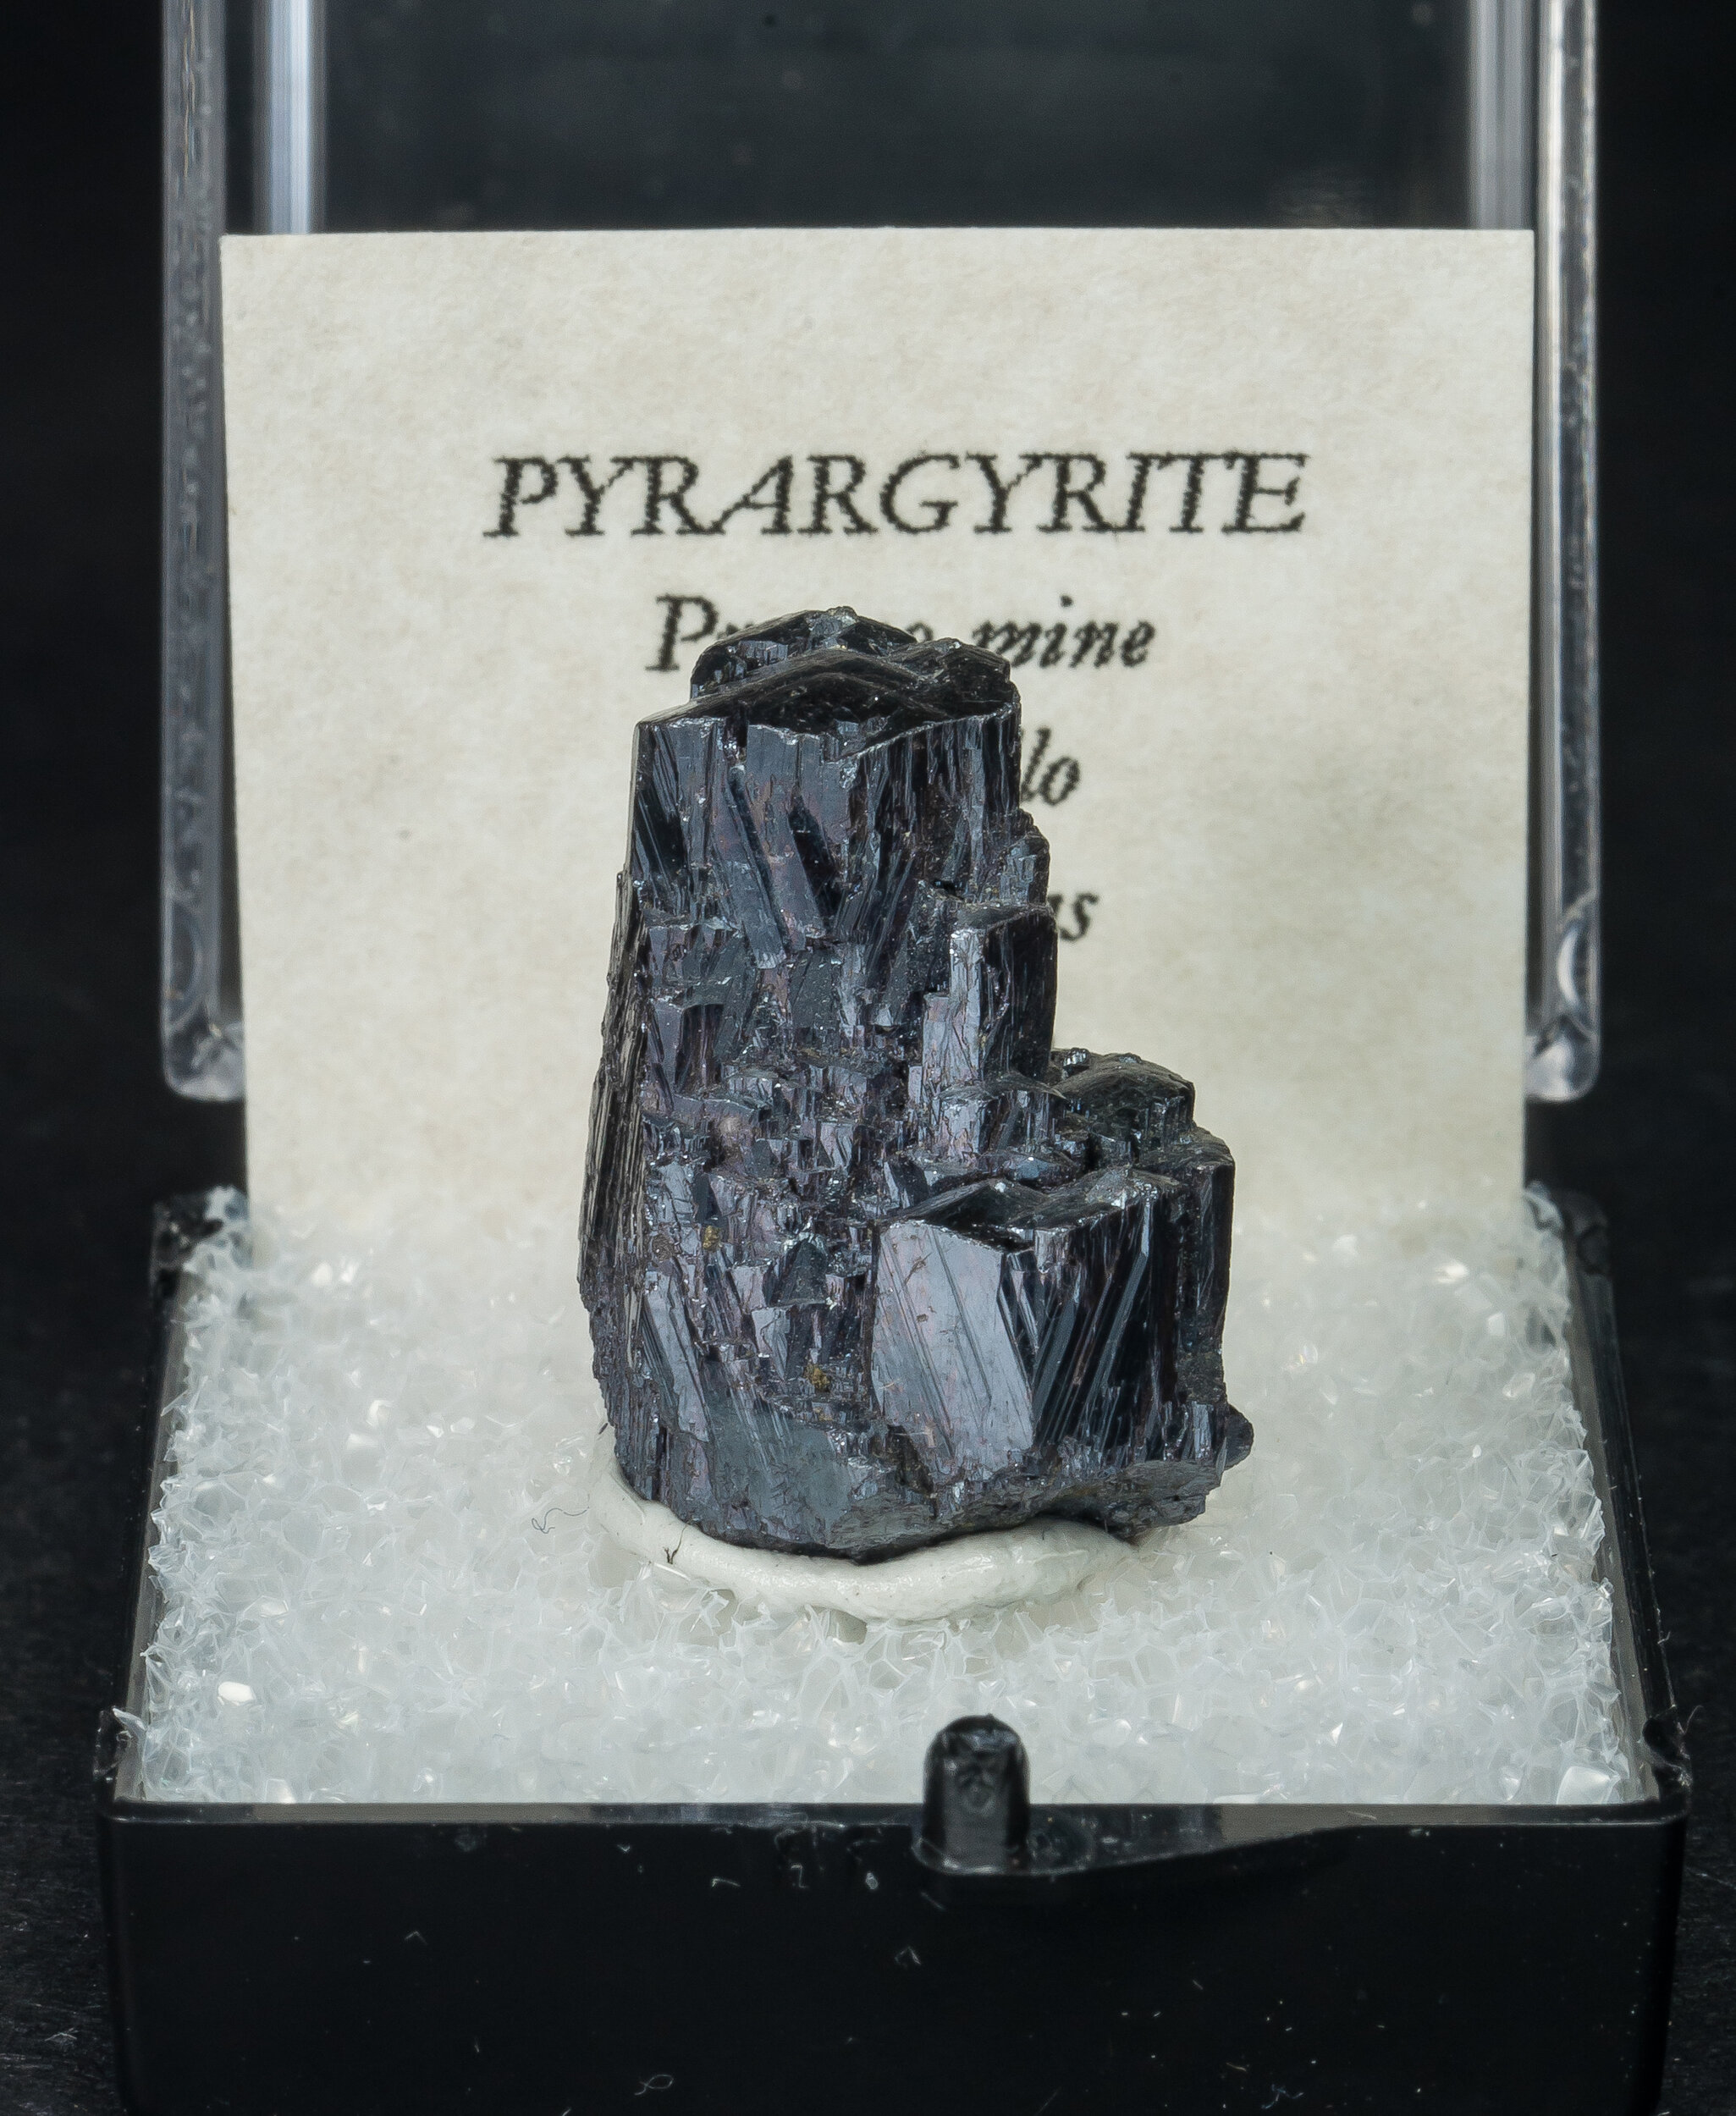 specimens/s_imagesAO3/Pyrargyrite-TAM37AO3f1.jpg